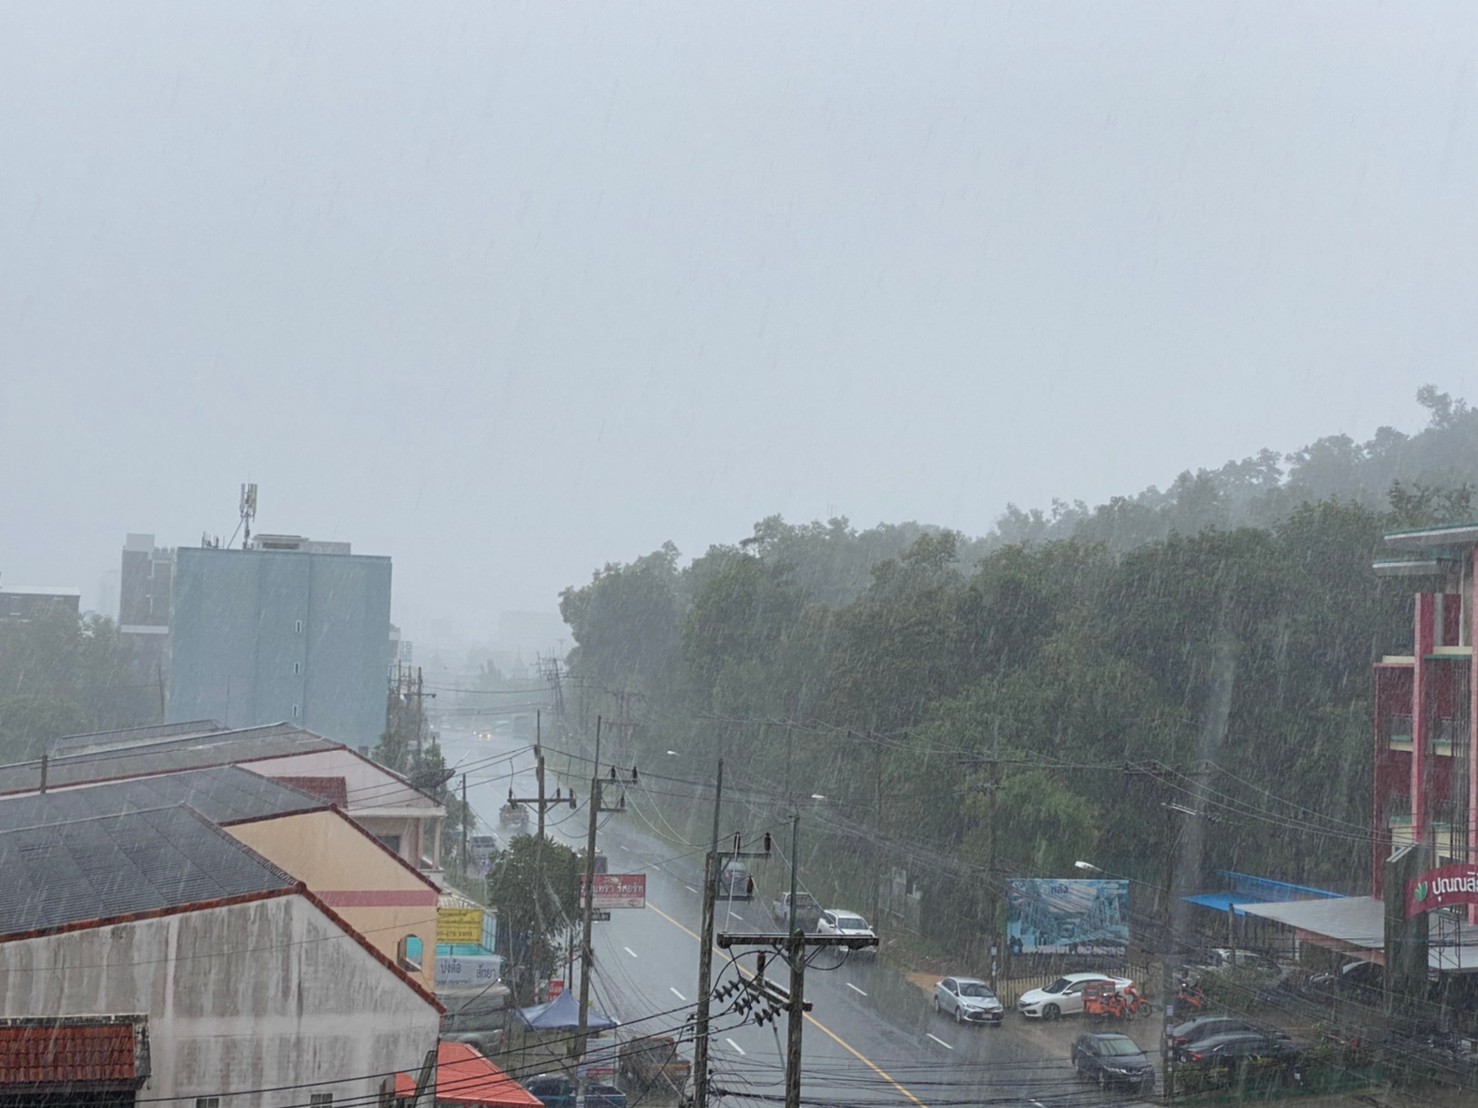 27 ก.ย.- 1 ต.ค. 63 มรุสมตะวันตกเฉียงใต้ปกคลุมภาคใต้ ฝนตกร้อยละ 60 ของพื้นที่-ทะเลอ่าวไทยมีกำลังแรงขึ้น